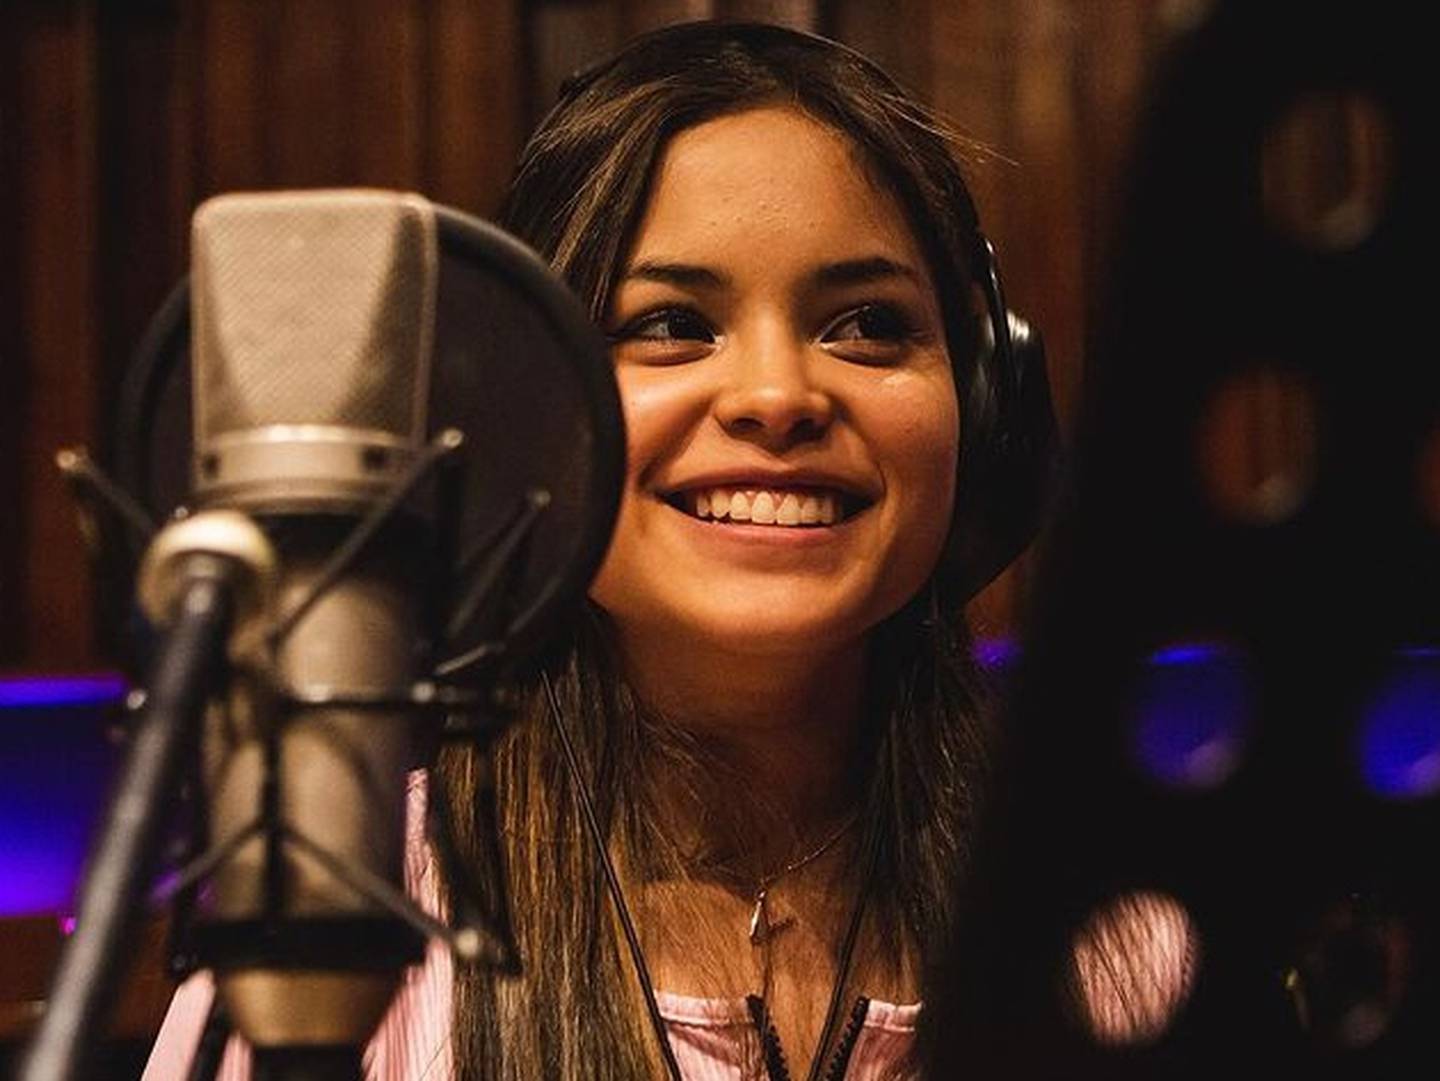 La exparticipante de "Rojo" y "The Voice Chile" está próxima a lanzar su primer sencillo. Lo anunció en sus redes sociales.